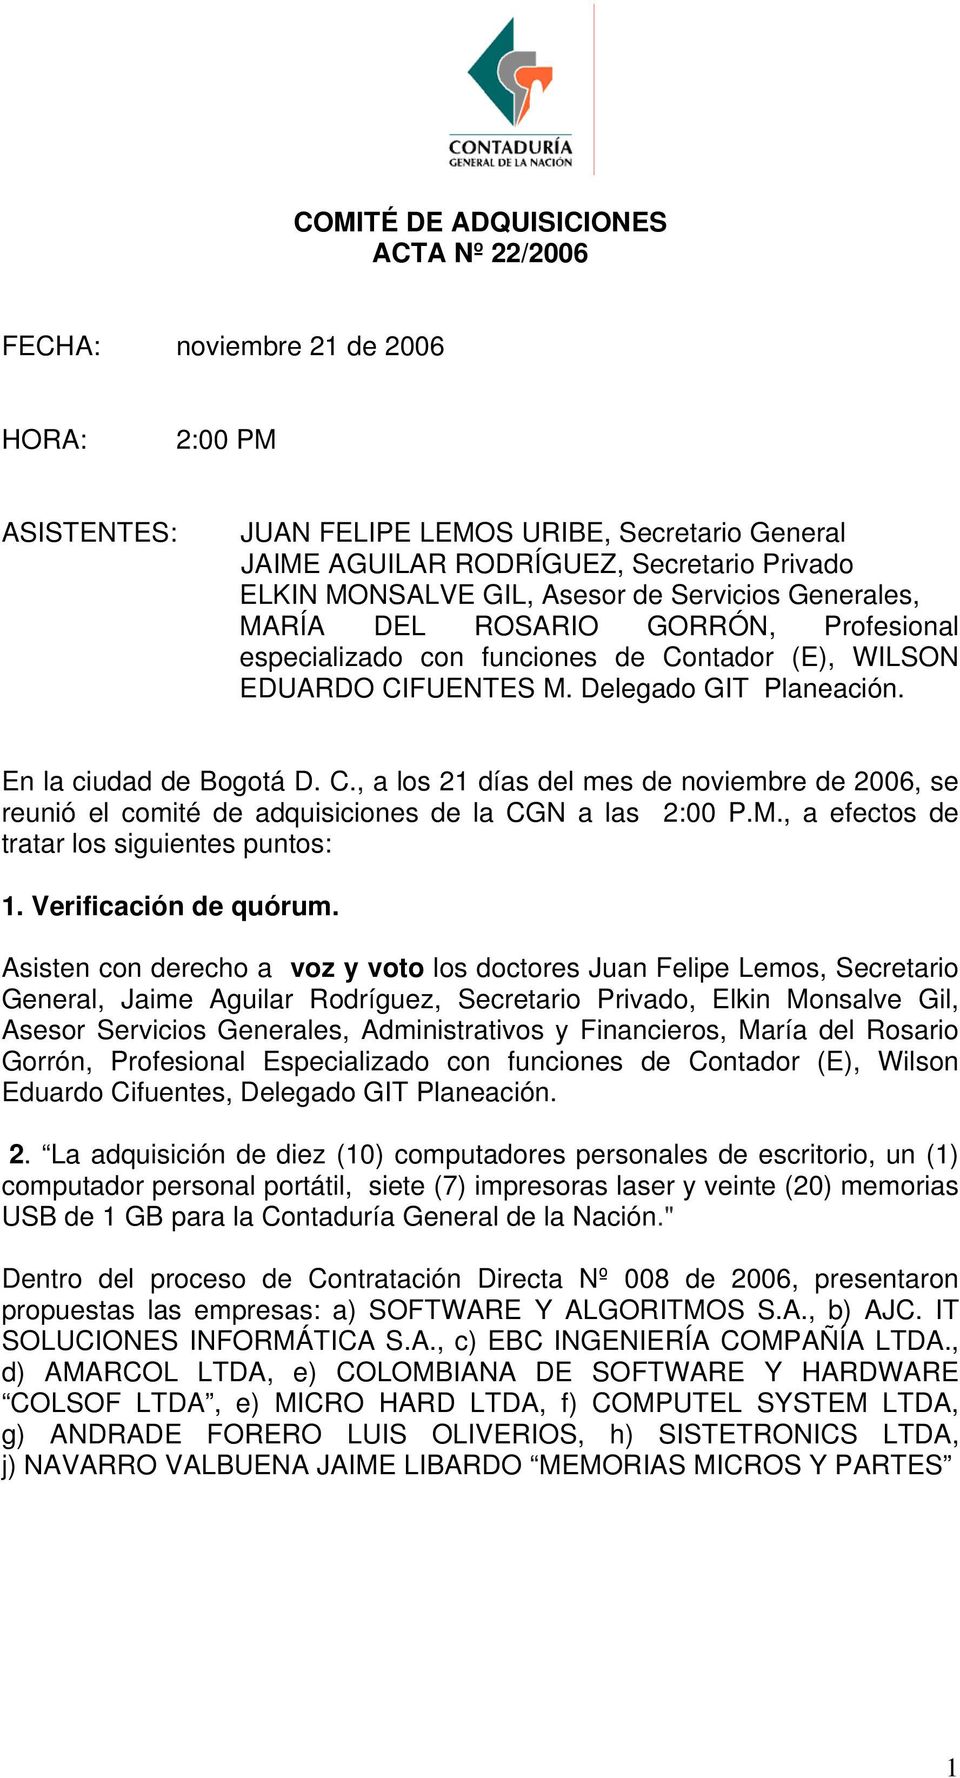 ntador (E), WILSON EDUARDO CIFUENTES M. Delegado GIT Planeación. En la ciudad de Bogotá D. C., a los 21 días del mes de noviembre de 2006, se reunió el comité de adquisiciones de la CGN a las 2:00 P.